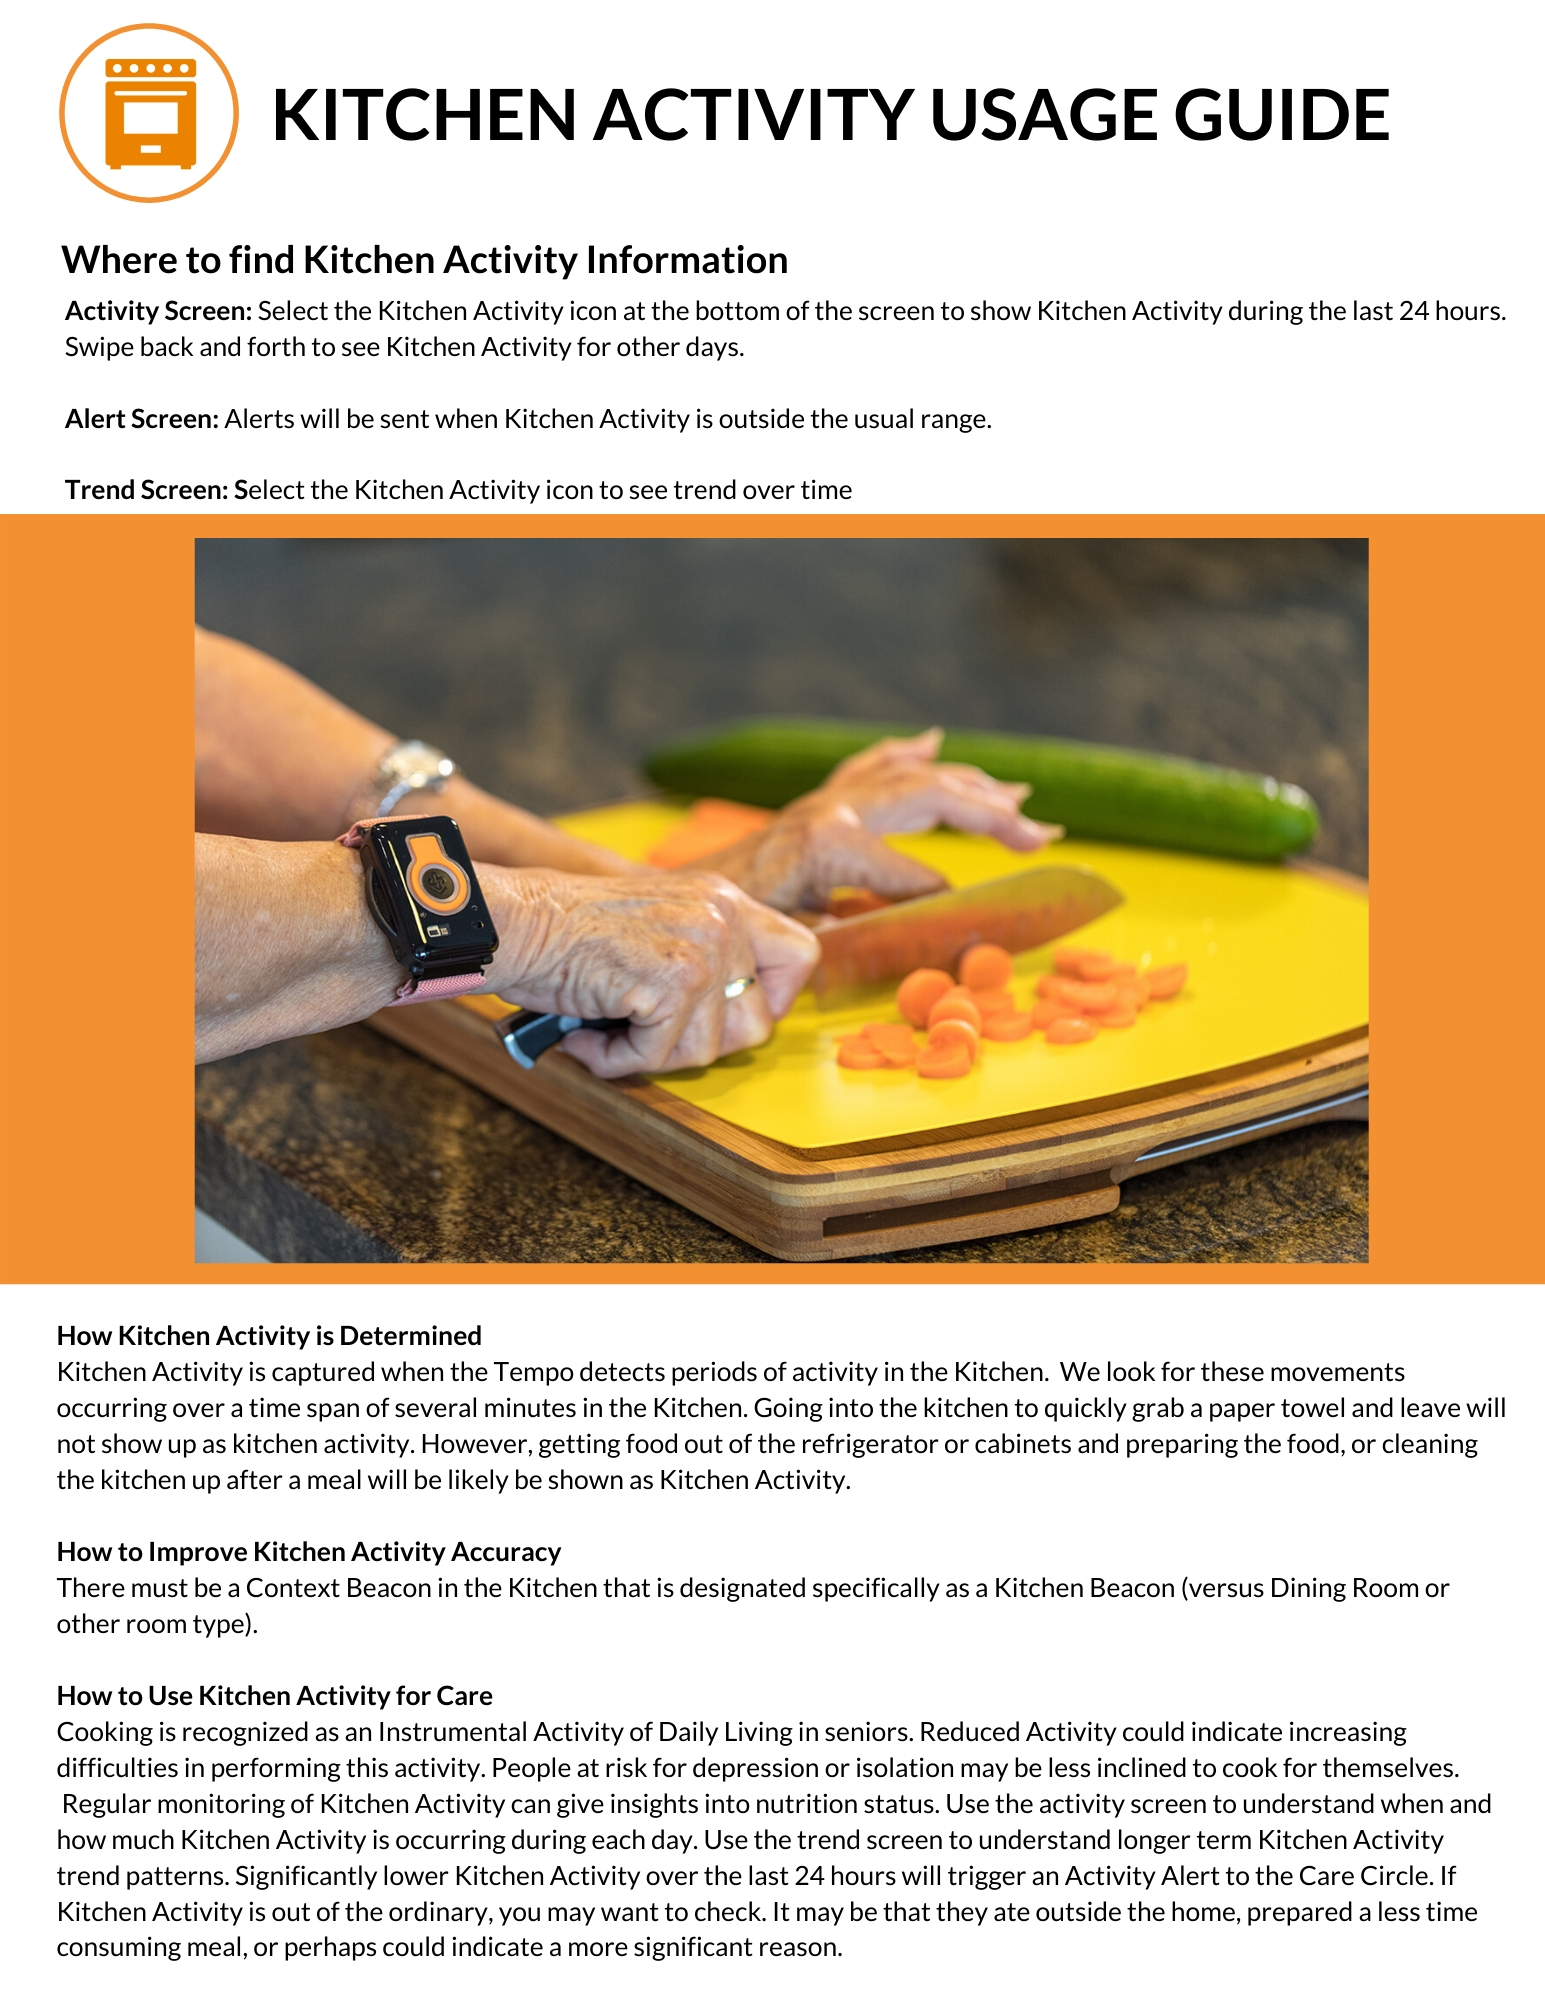 Kitchen_Activity_Usage_Guide.jpg